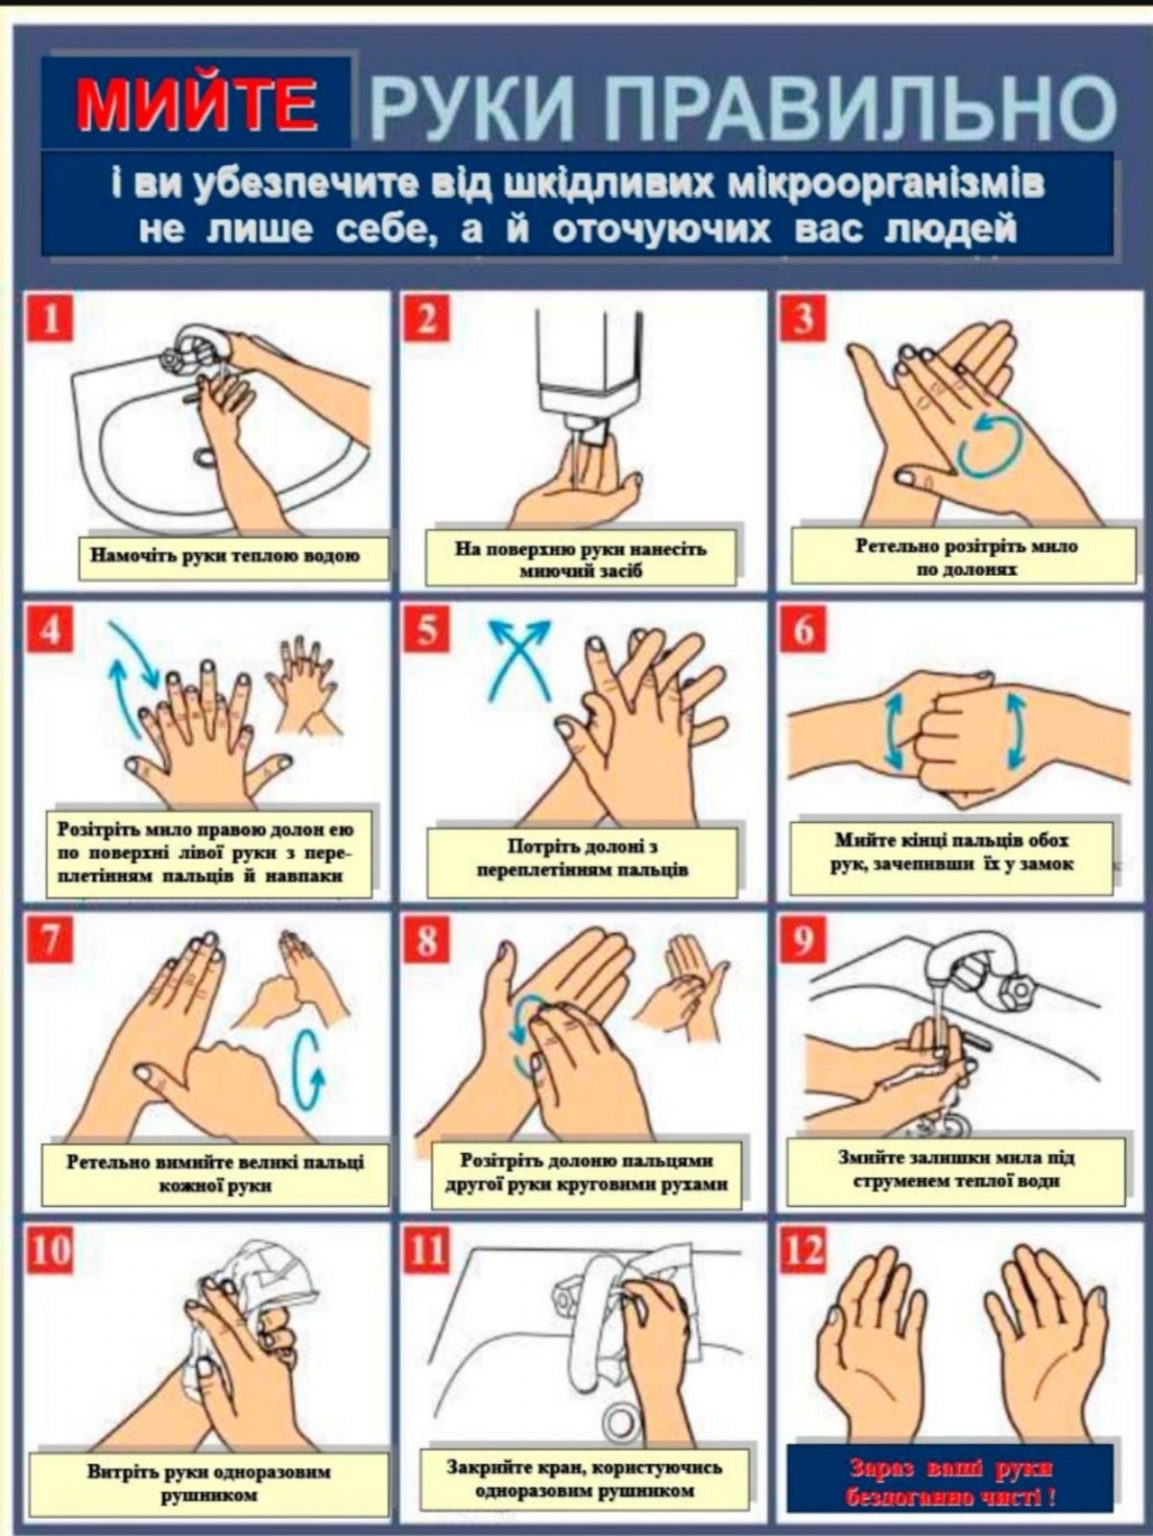 Стандарты гигиенической обработки рук. Гигиенический метод мытья рук алгоритм. Гигиеническая обработка рук медицинского персонала САНПИН 2022. Схема гигиенической обработки рук. Инструкция по мытью рук.